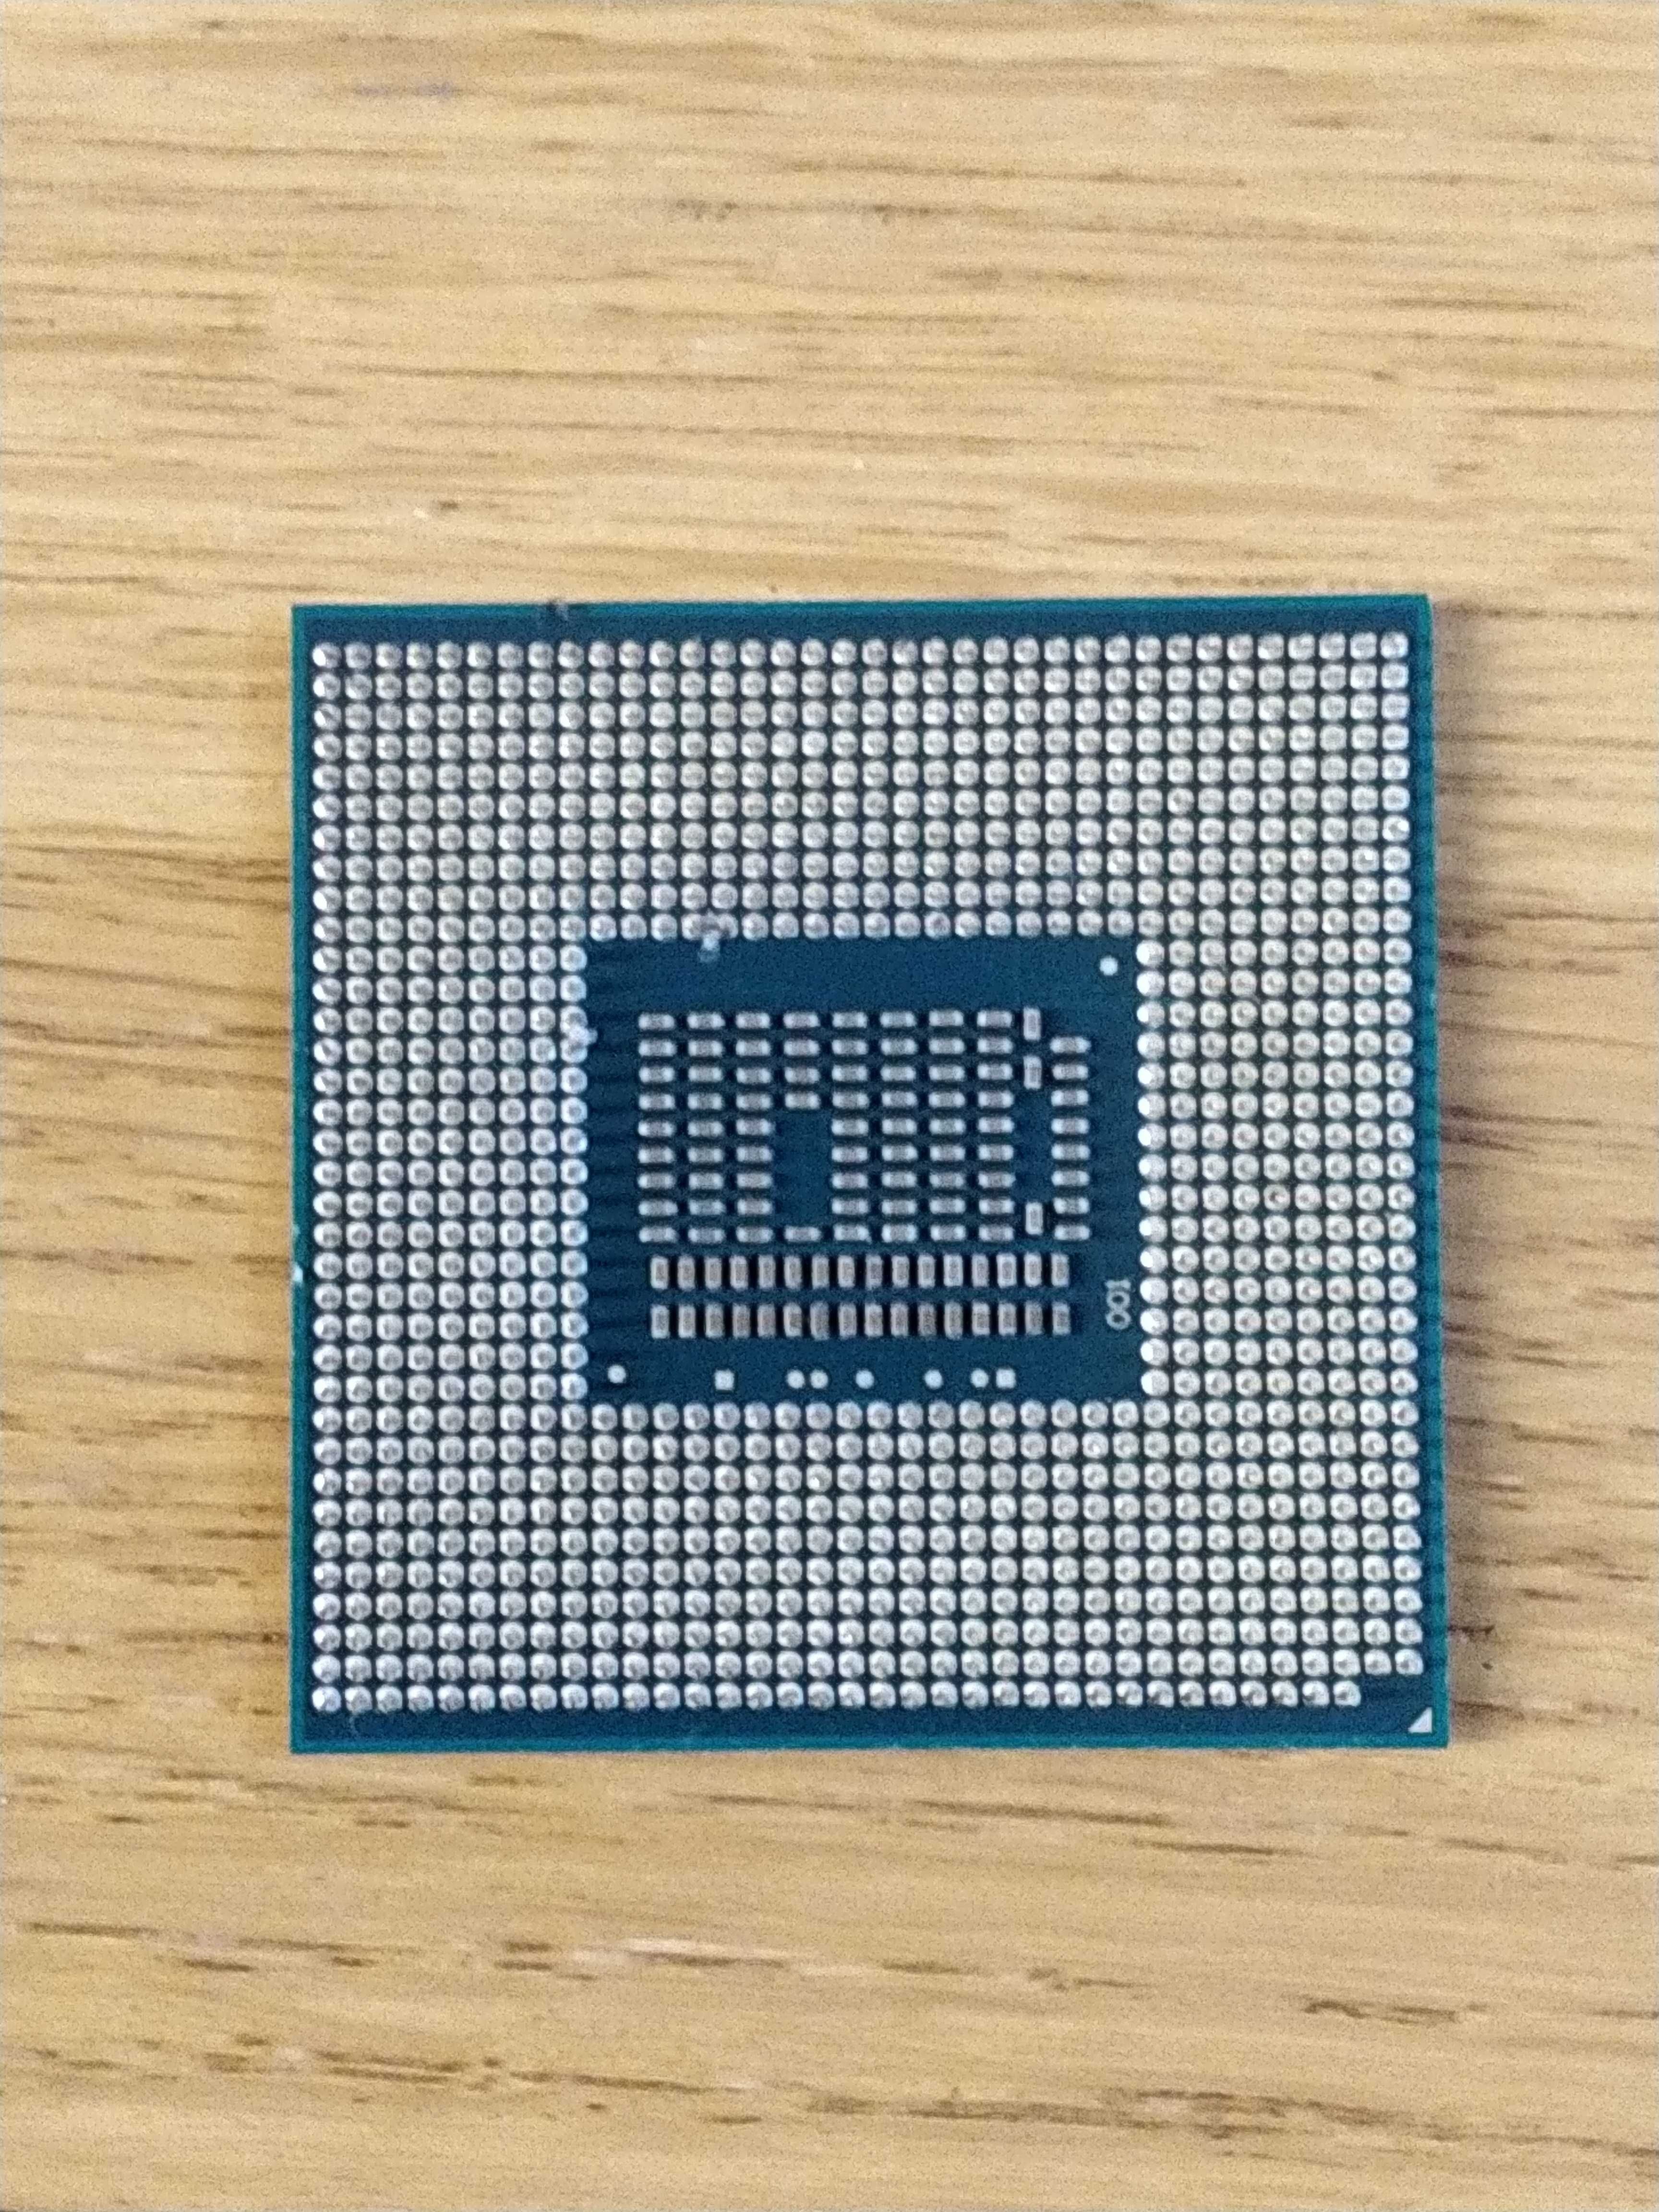 Processador i7 3450m portátil